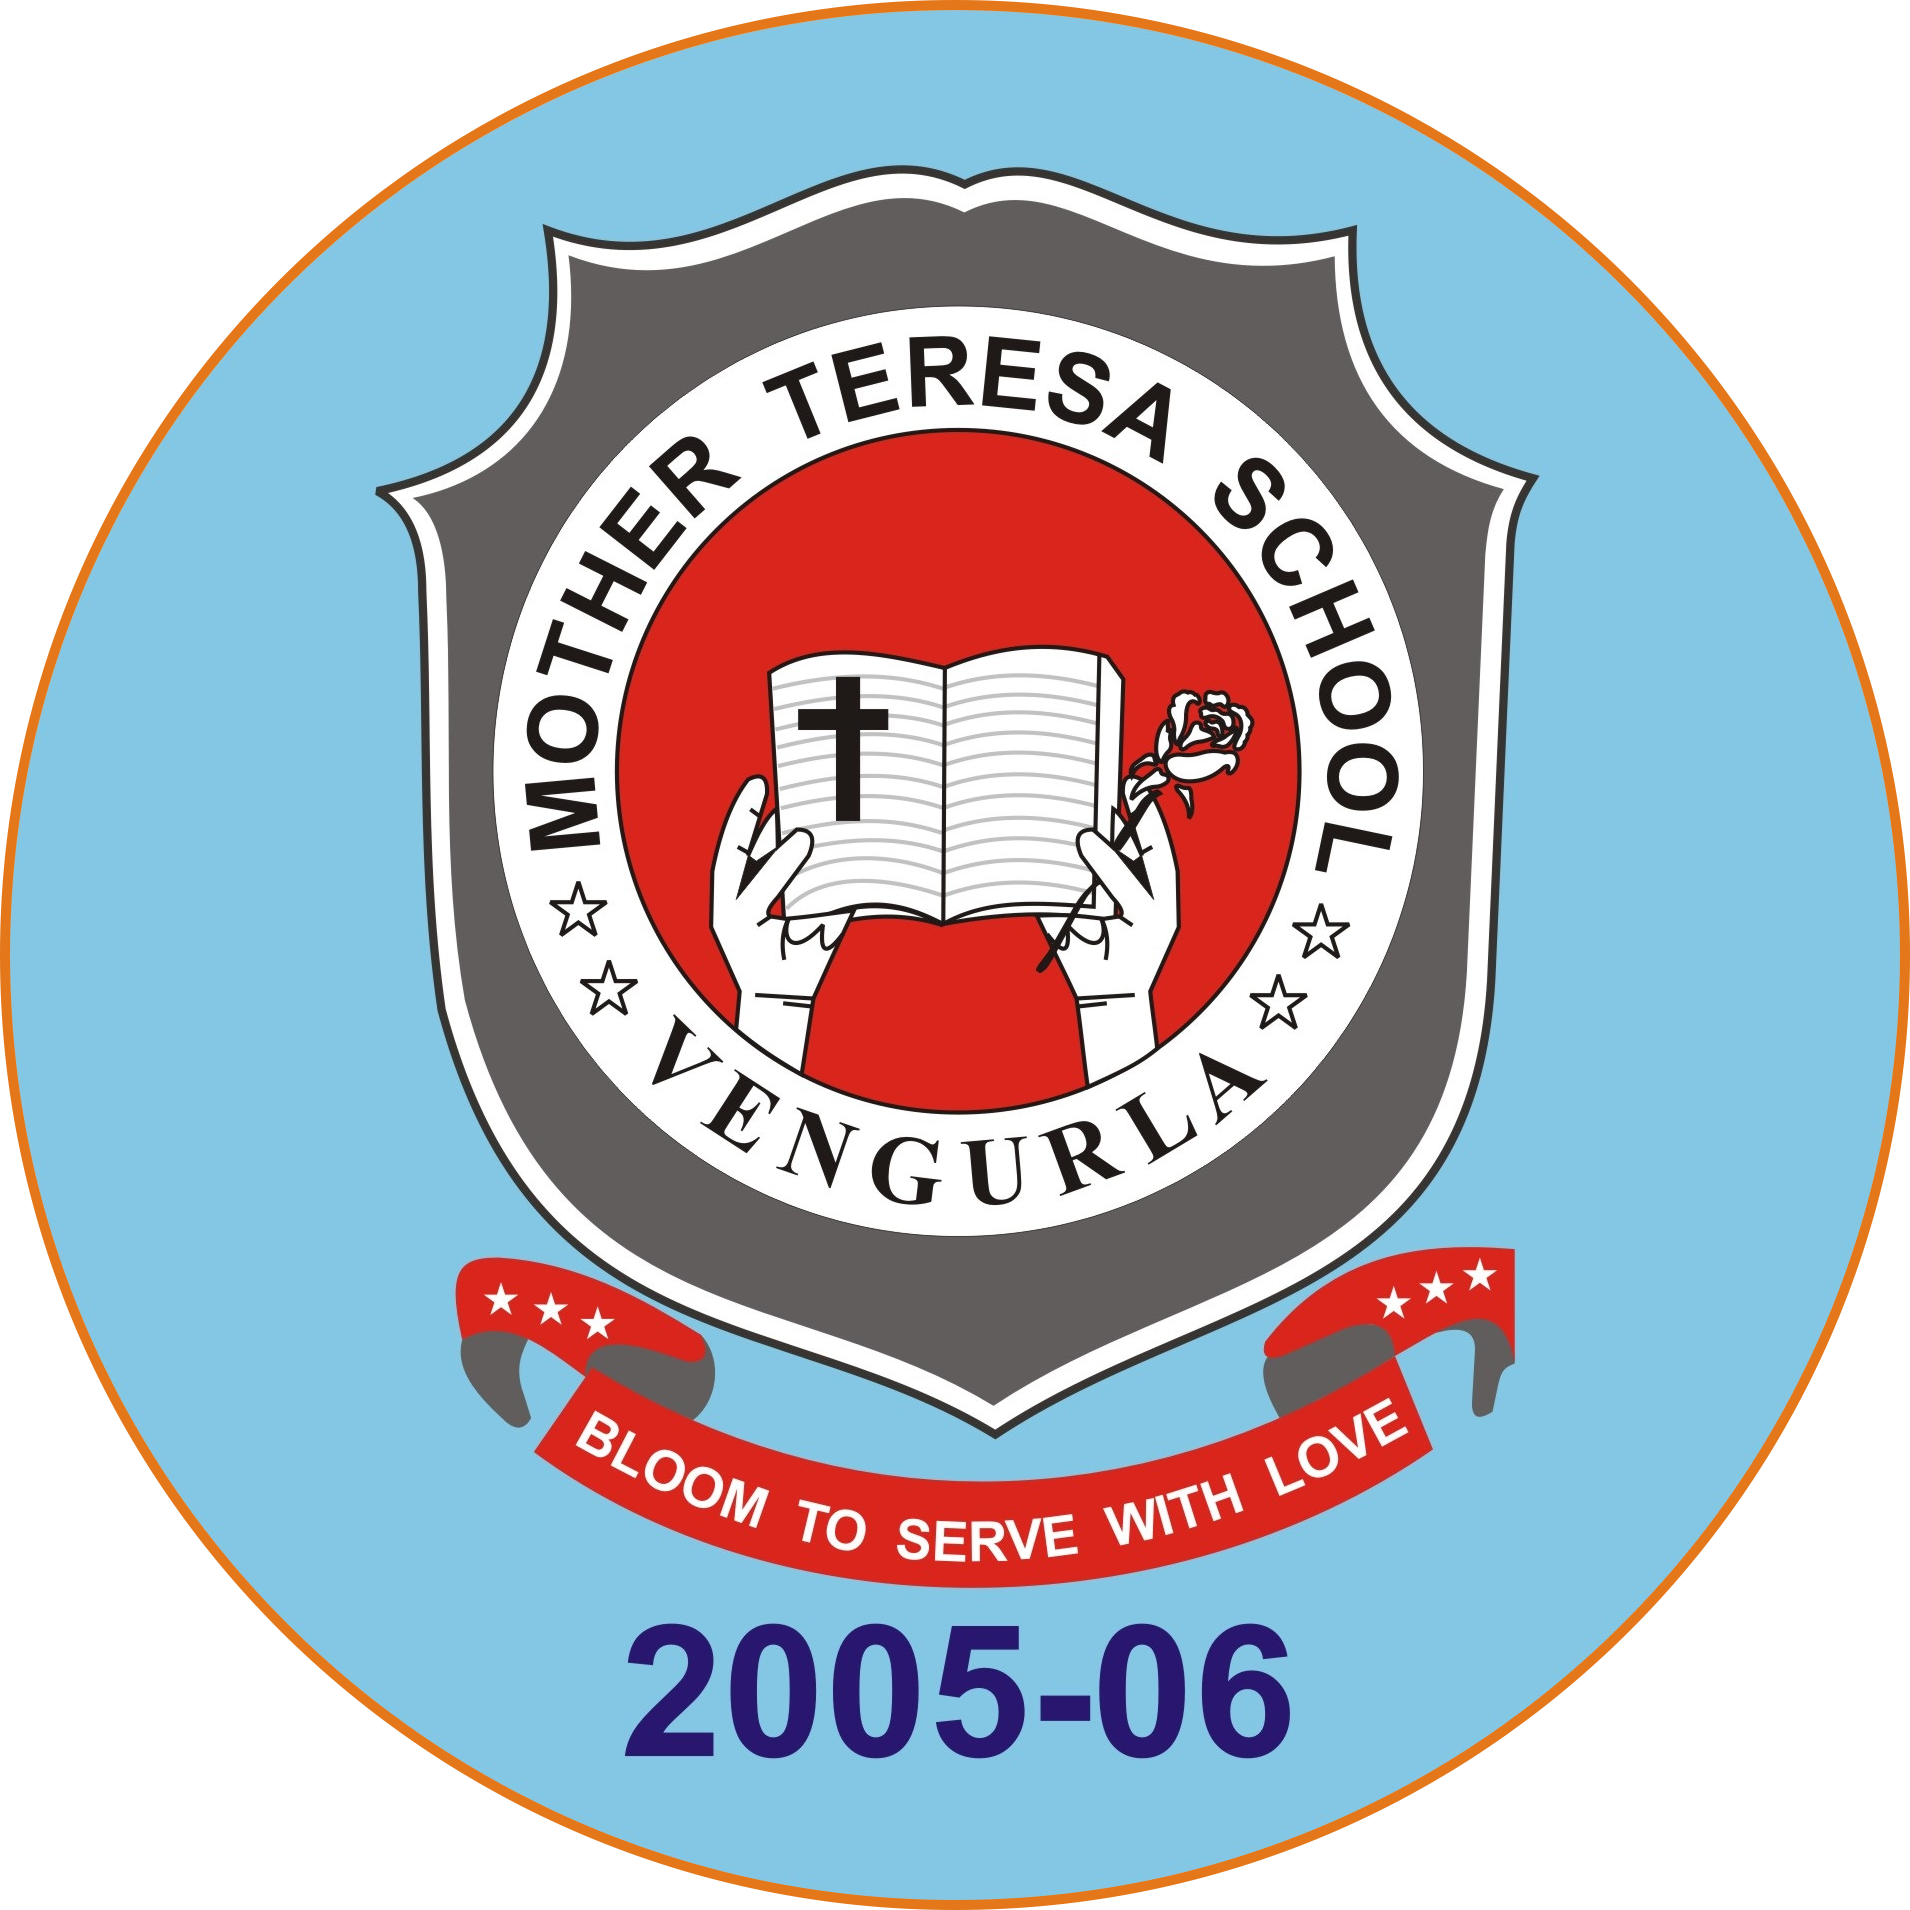 Mother Teresa School - Logo